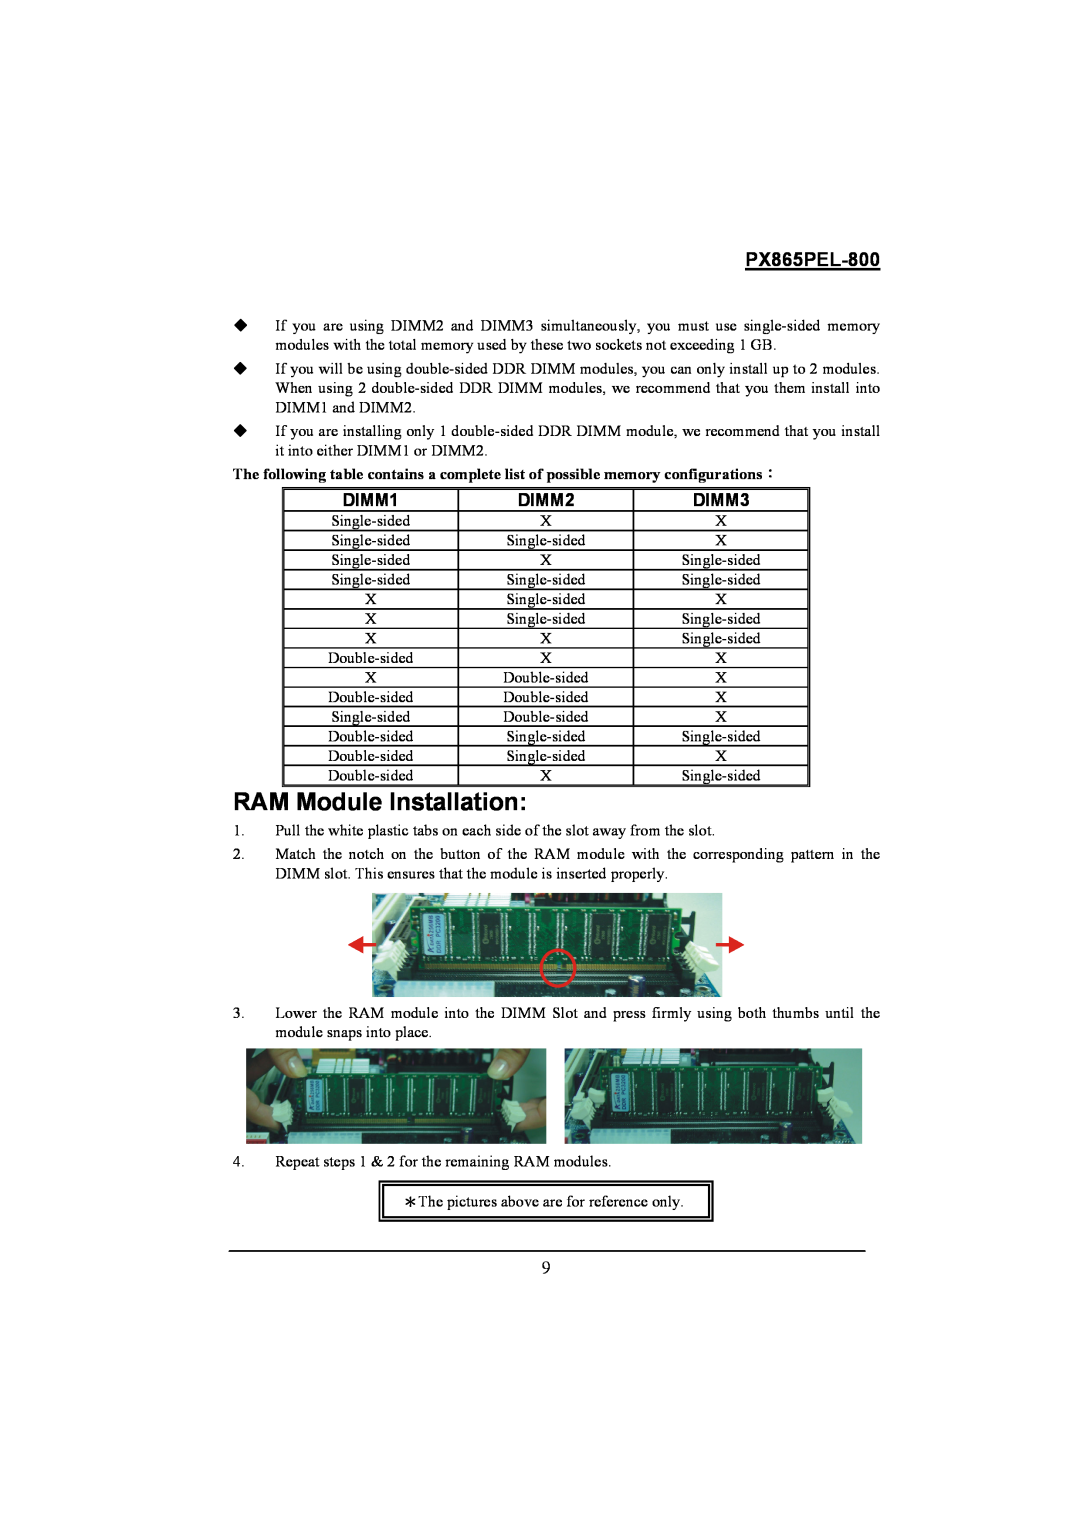 Intel PX865PEL-800 warranty RAM Module Installation, DIMM1, DIMM2, DIMM3 